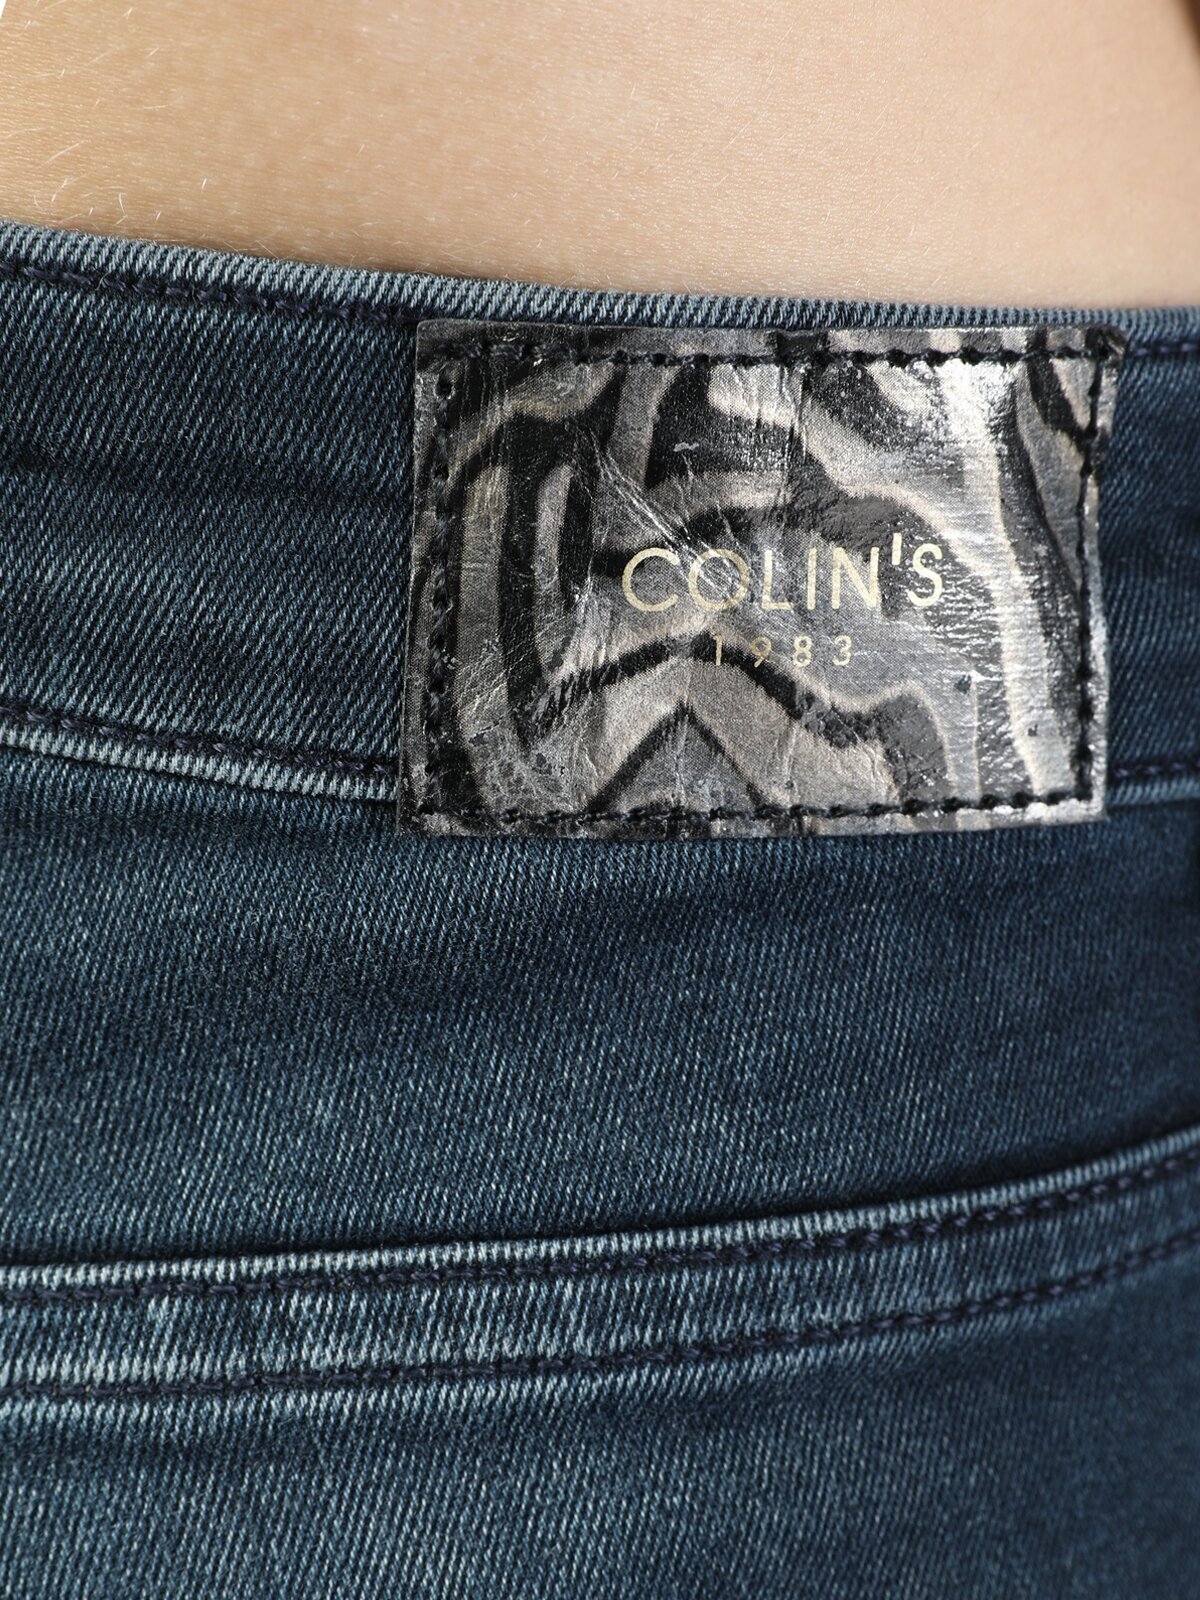 Colins 760 Dıana Yüksek Bel Dar Paça Super Slim Fit Gri Kadın Jean Pantolon. 5